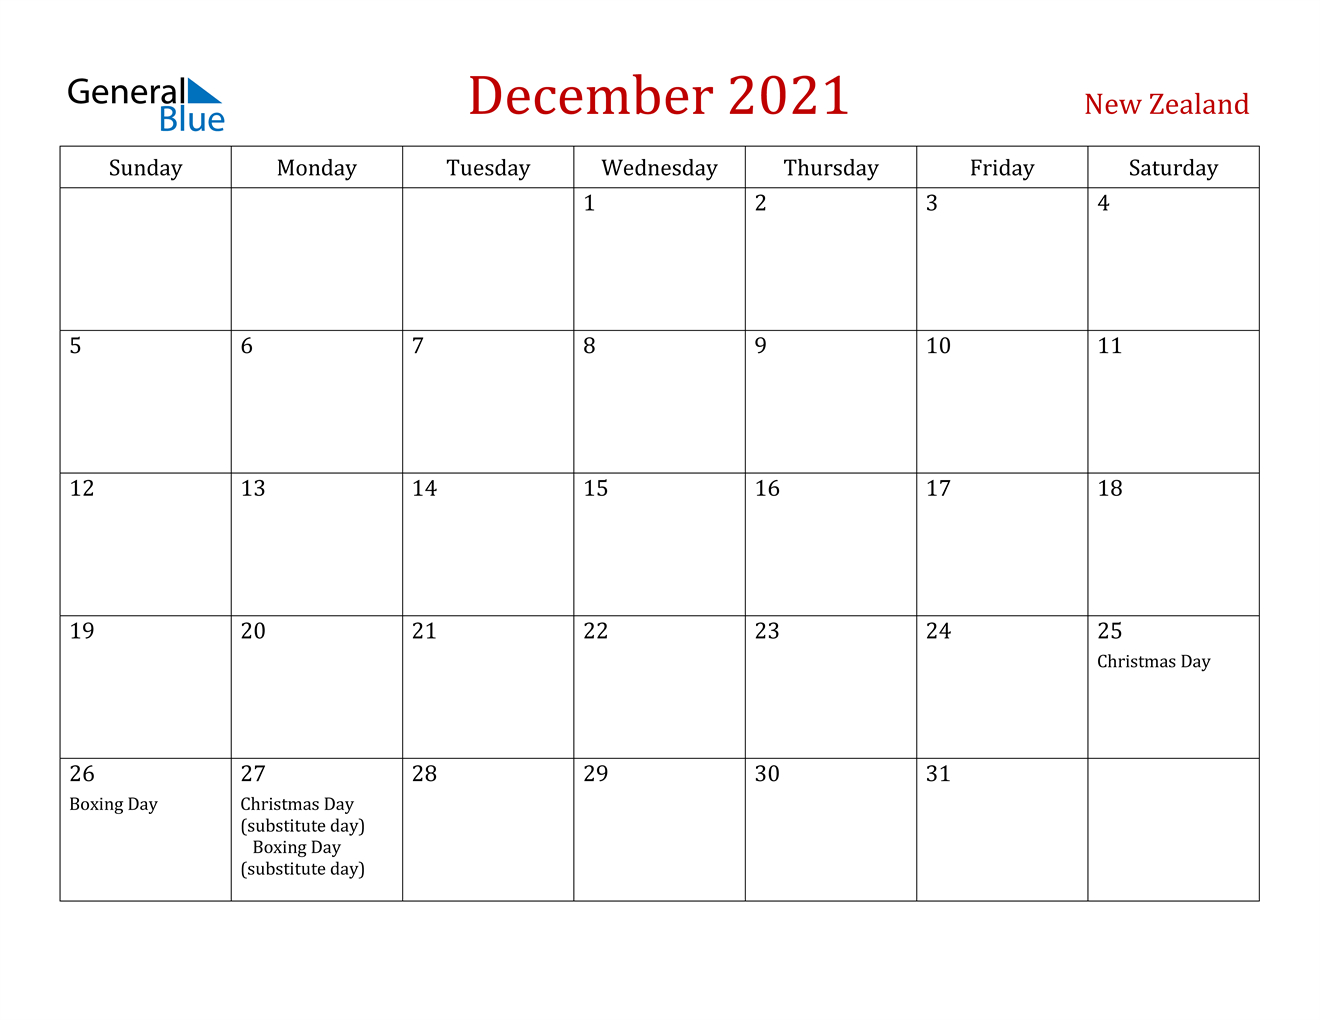 December 2021 Calendar - New Zealand